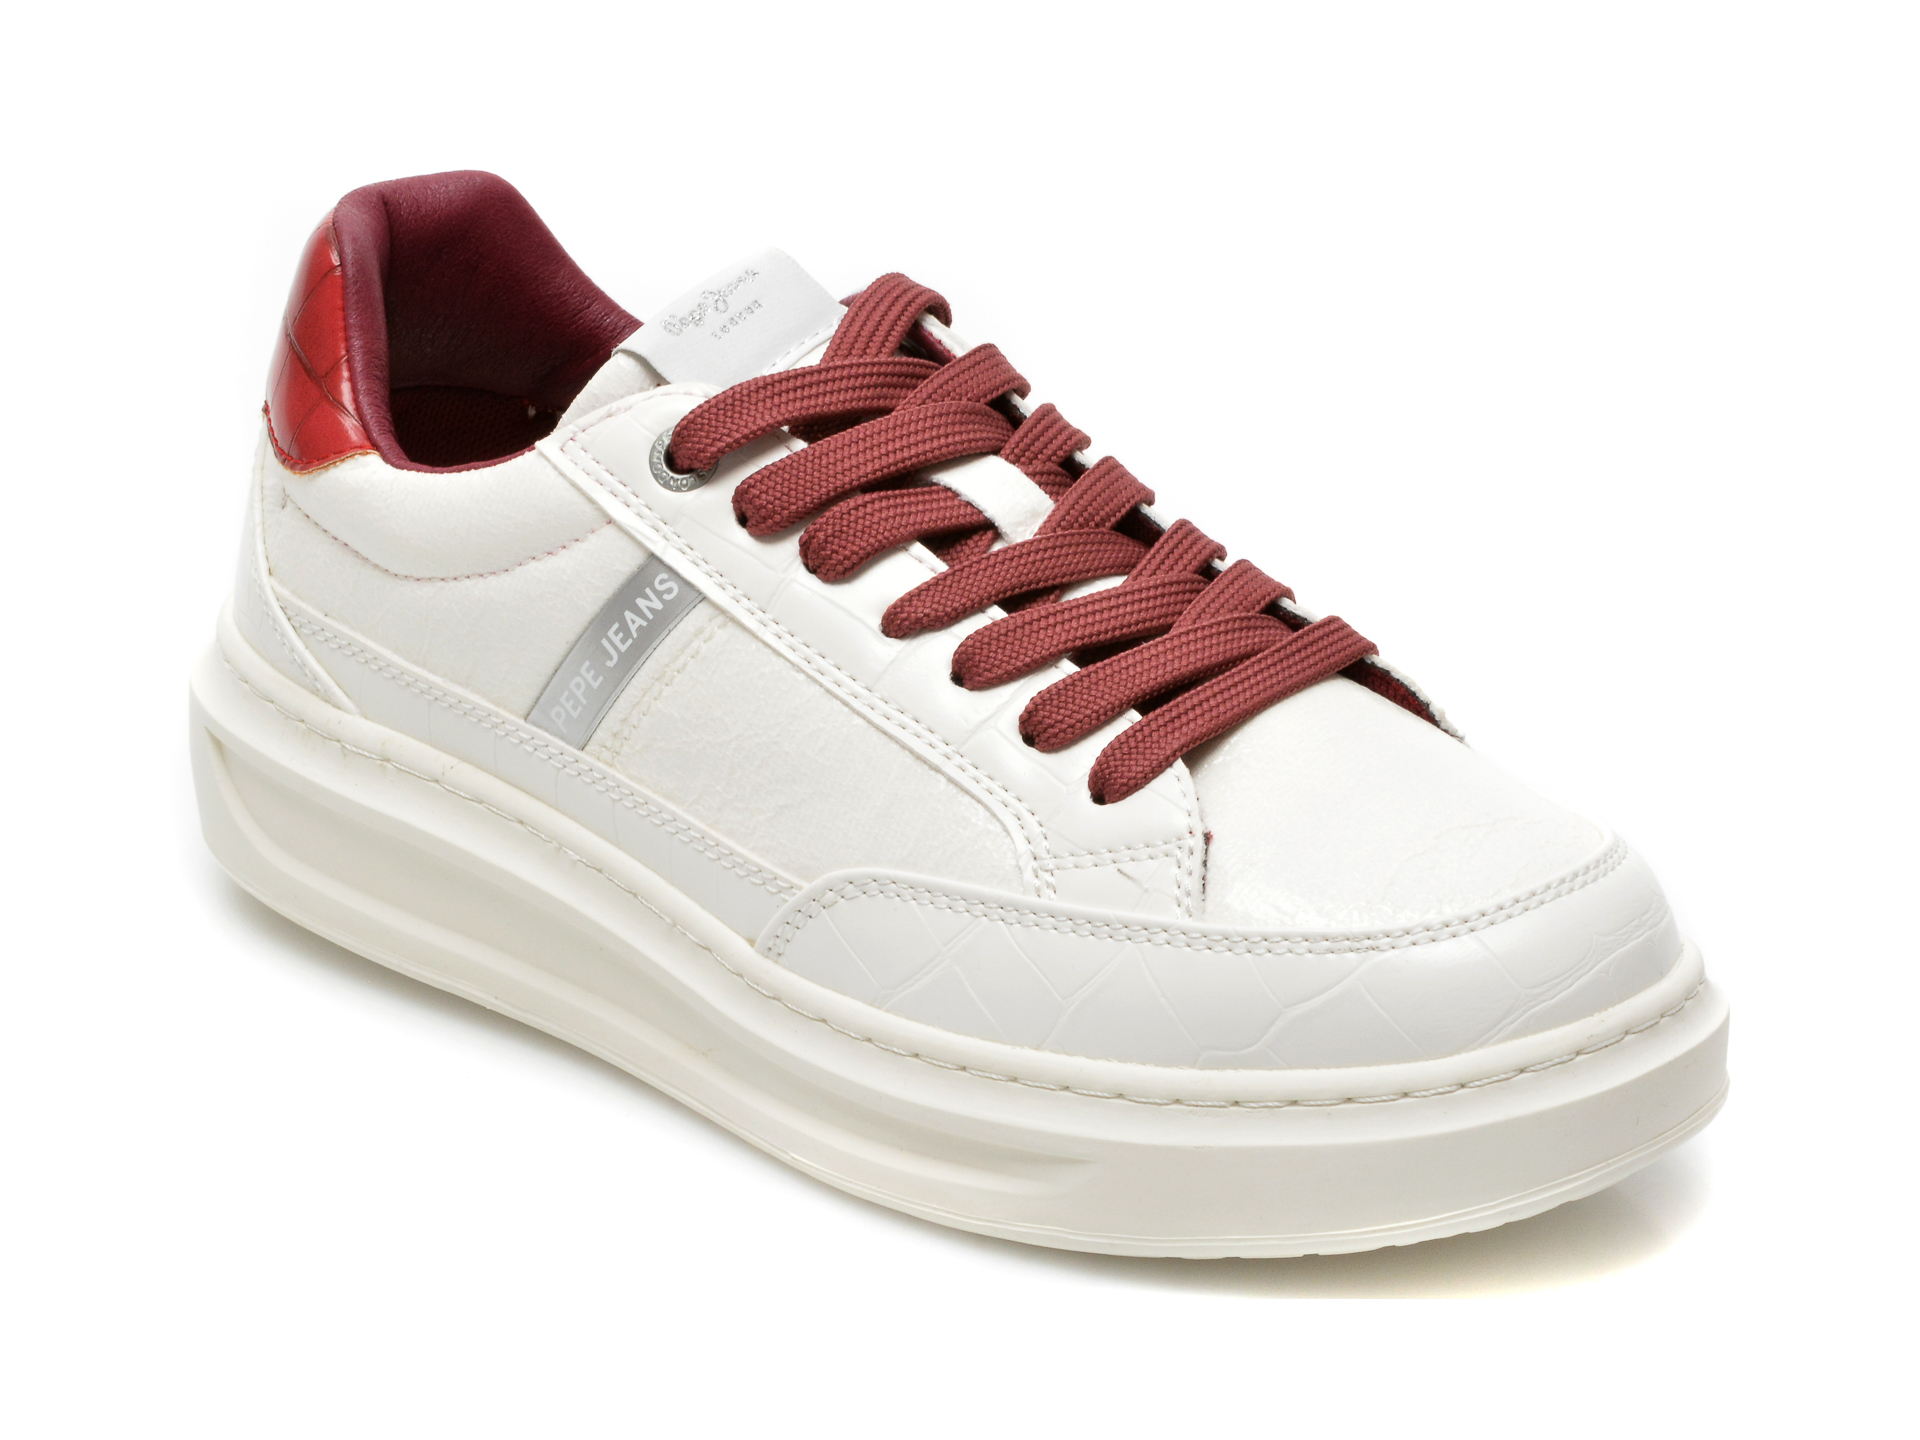 Pantofi sport PEPE JEANS albi, LS31194, din piele ecologica Pepe Jeans imagine reduceri